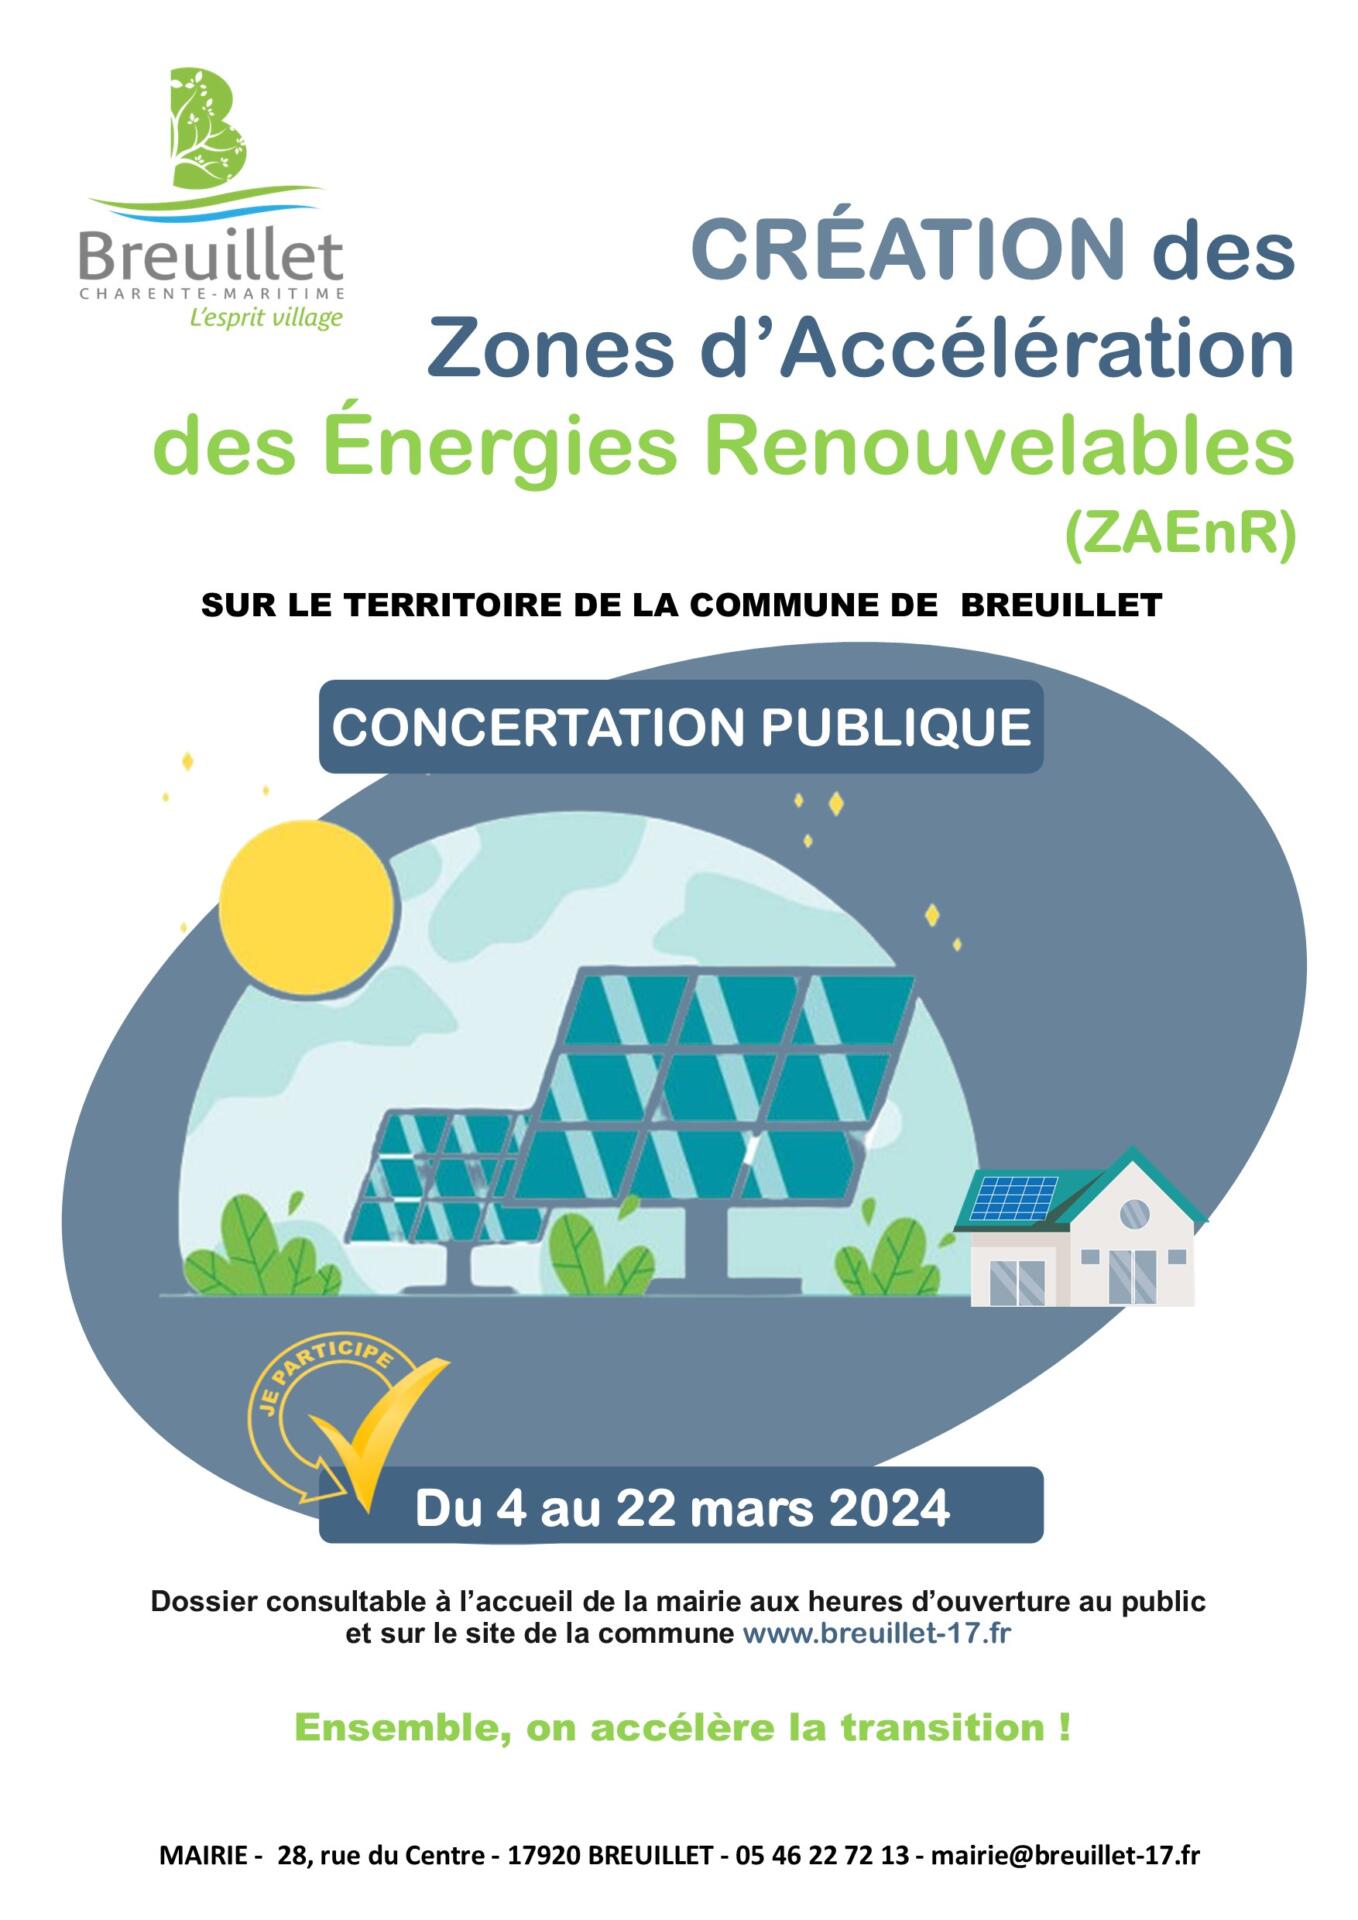 Création de Zones d’Accélération des Énergies Renouvelables (ZAEnR) : concertation publique